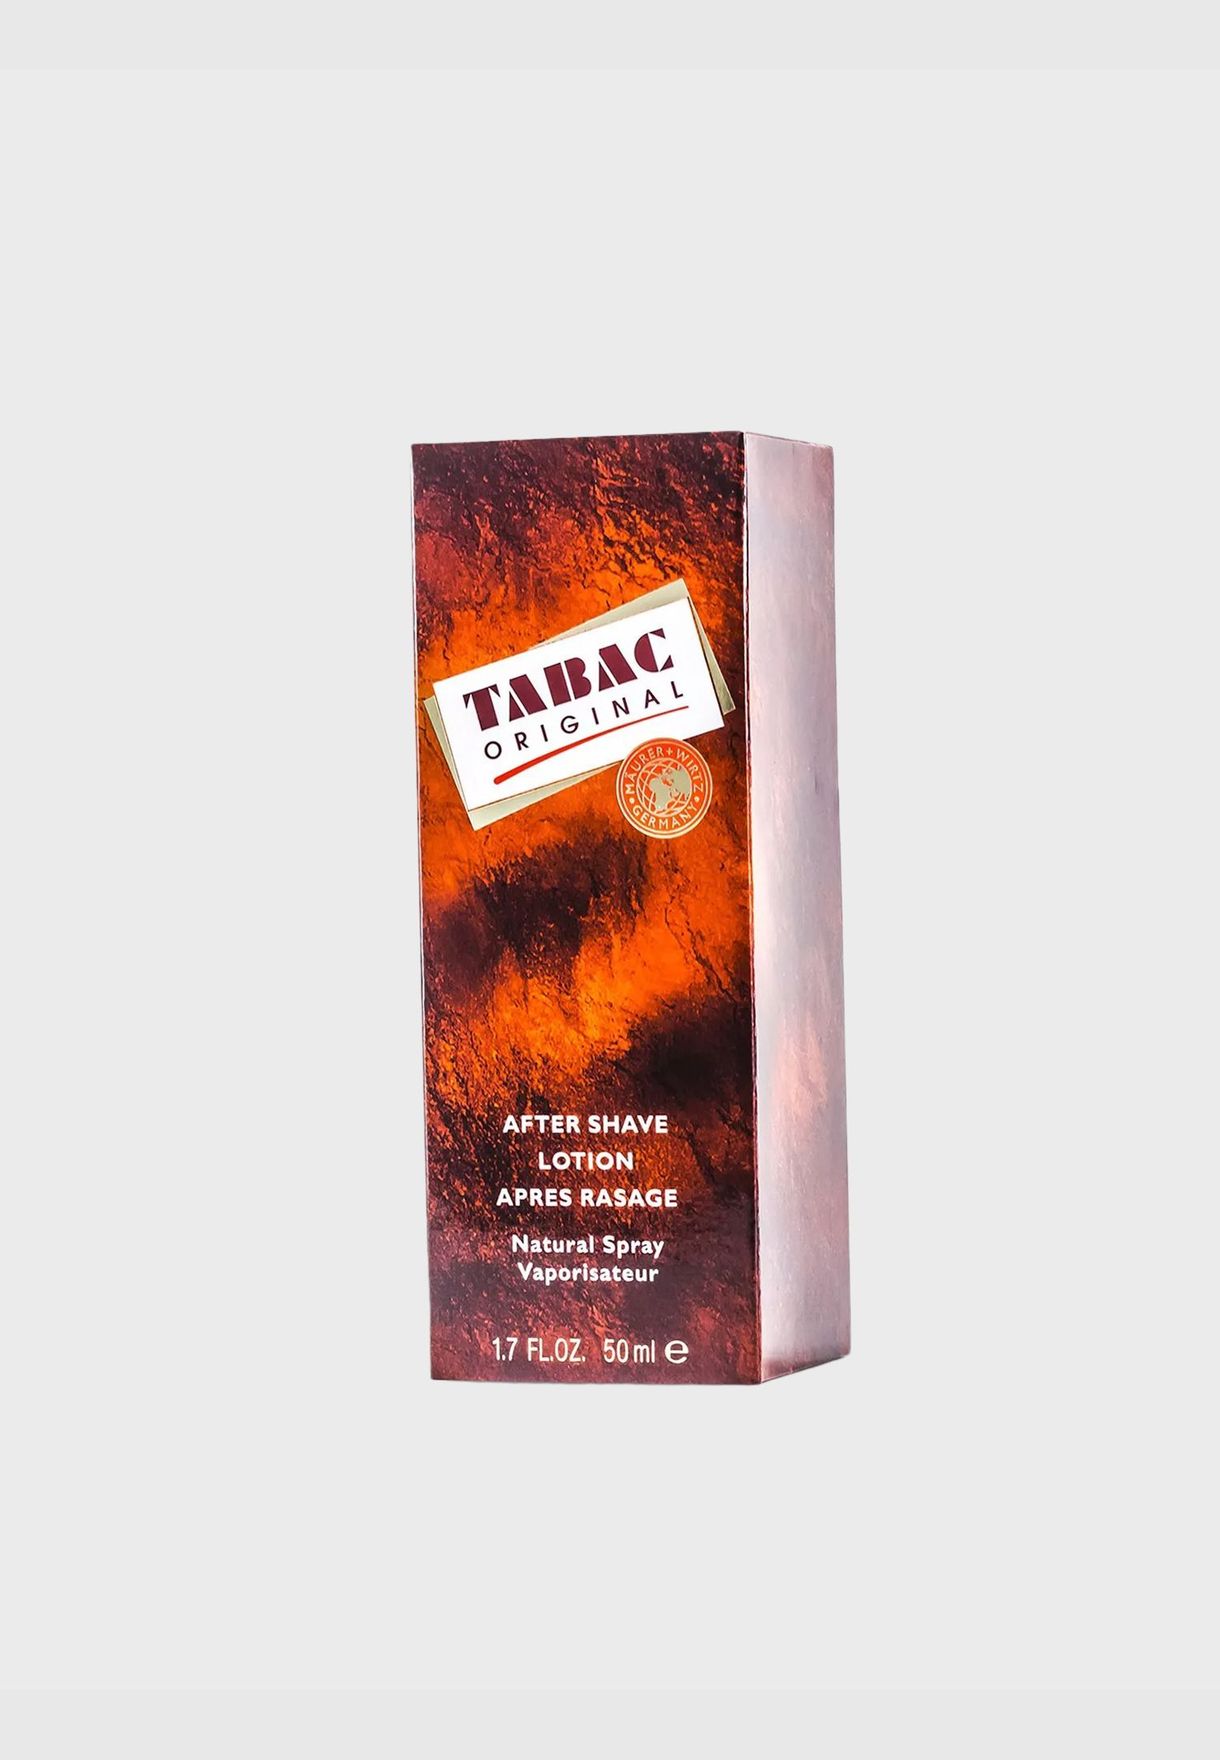 Tabac Original سبراي بعد الحلاقة